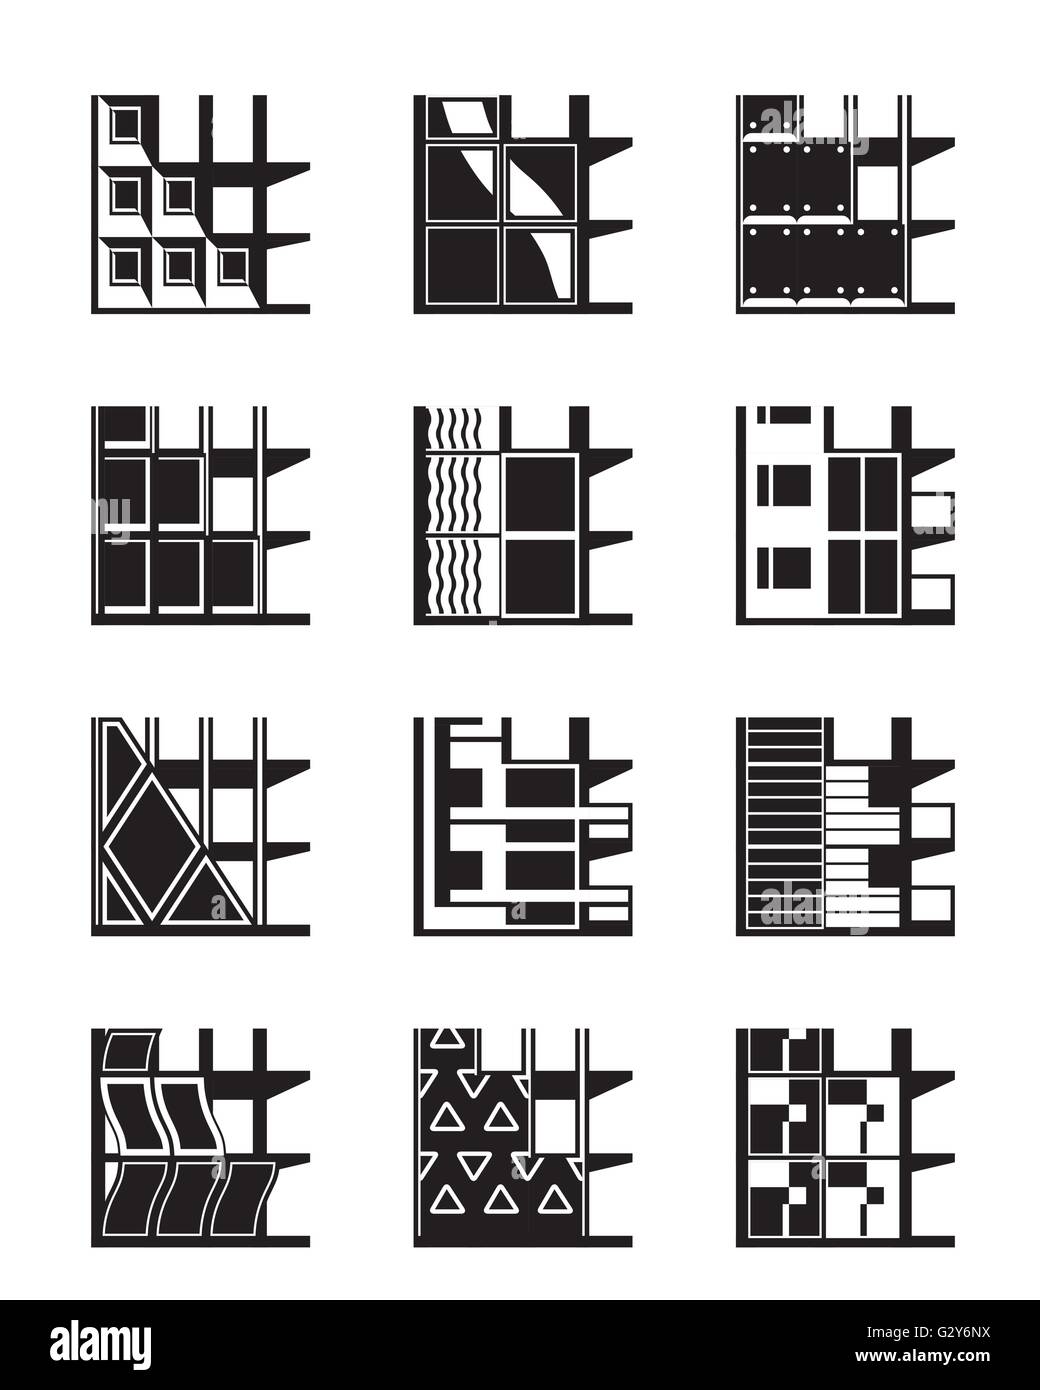 Verschiedene Arten von Fassaden von Gebäuden - Vektor-illustration Stock Vektor